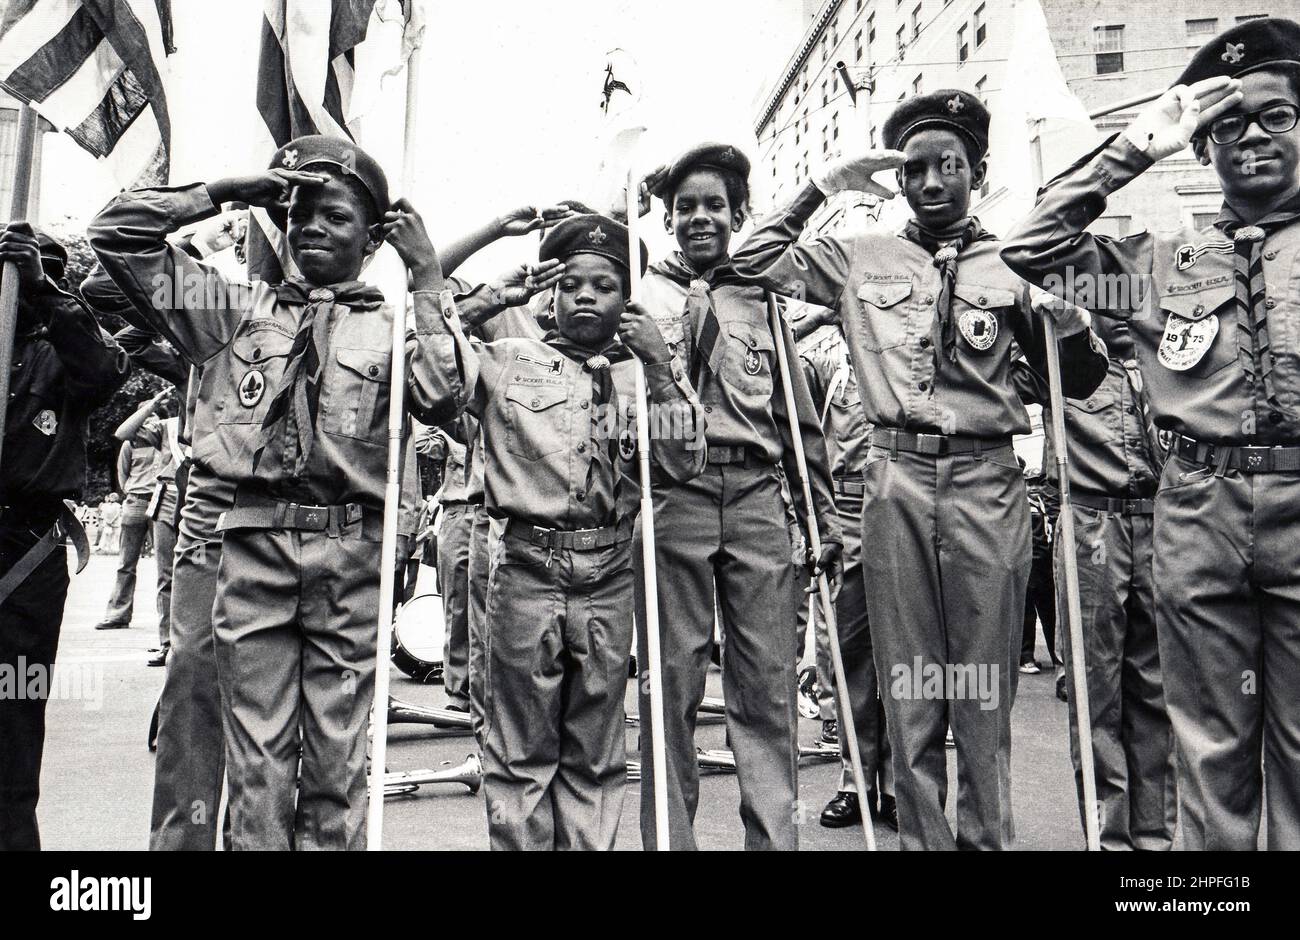 Les scouts en uniforme saluent et sourient. Lors d'une parade de la journée des anciens combattants à Manhattan, New York vers 1976. Banque D'Images